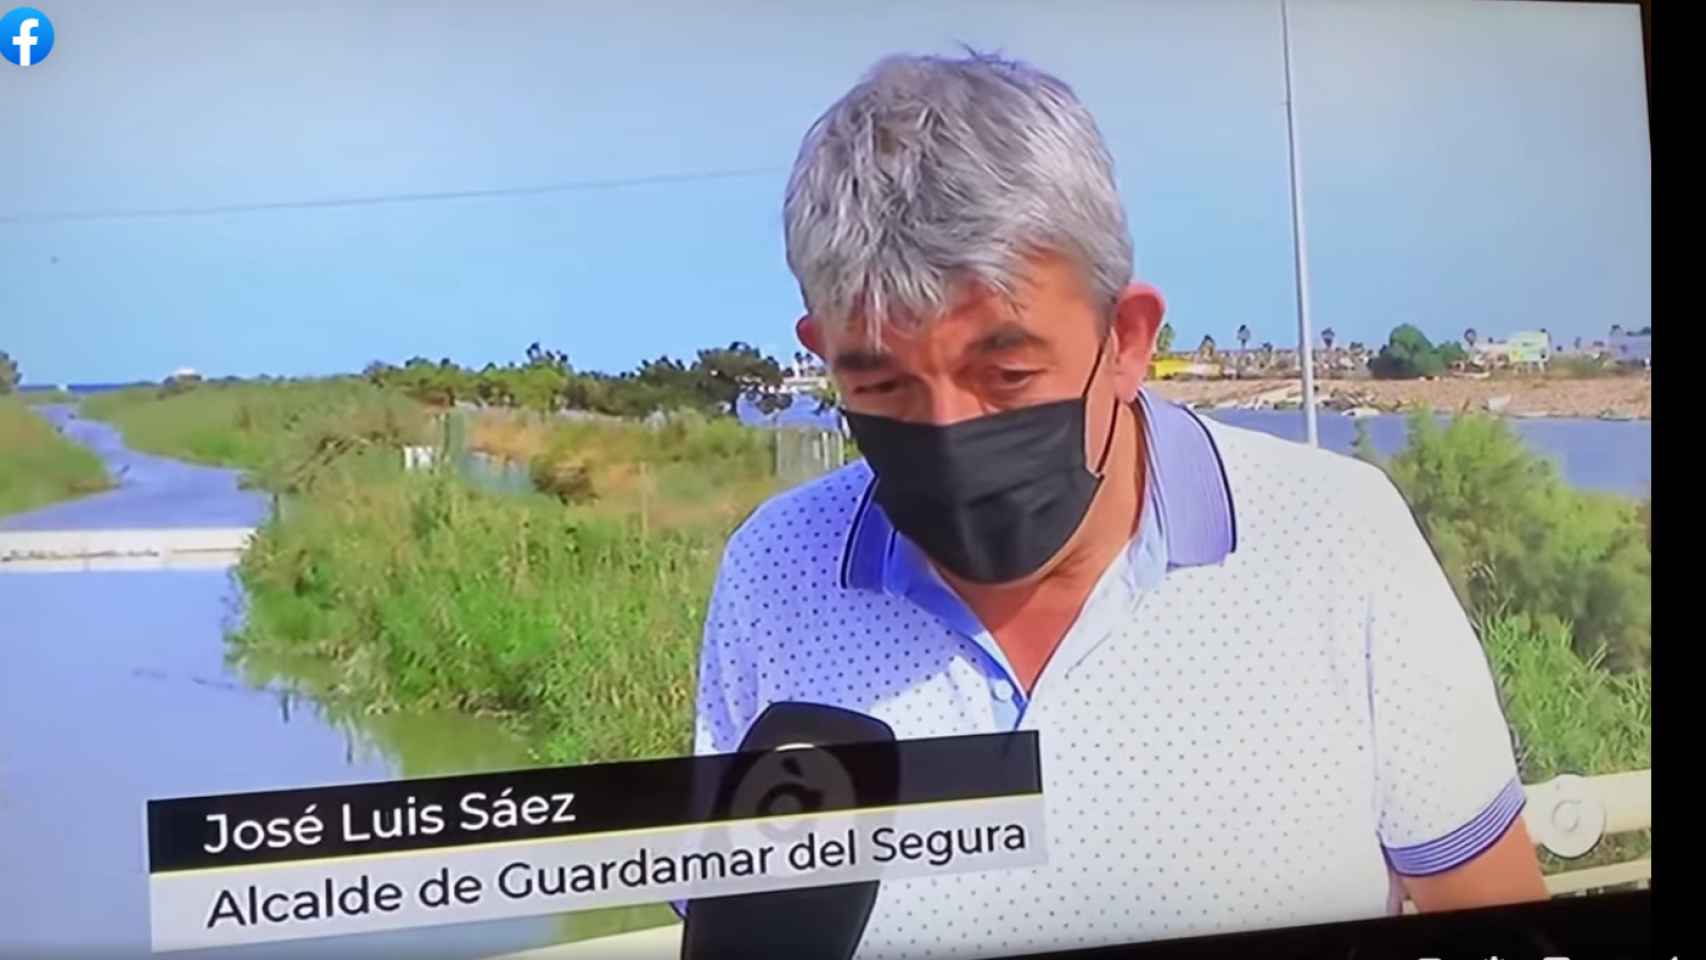 Intervención del alcalde José Luis Sáez en A Punt, que ha subido a su Facebook.